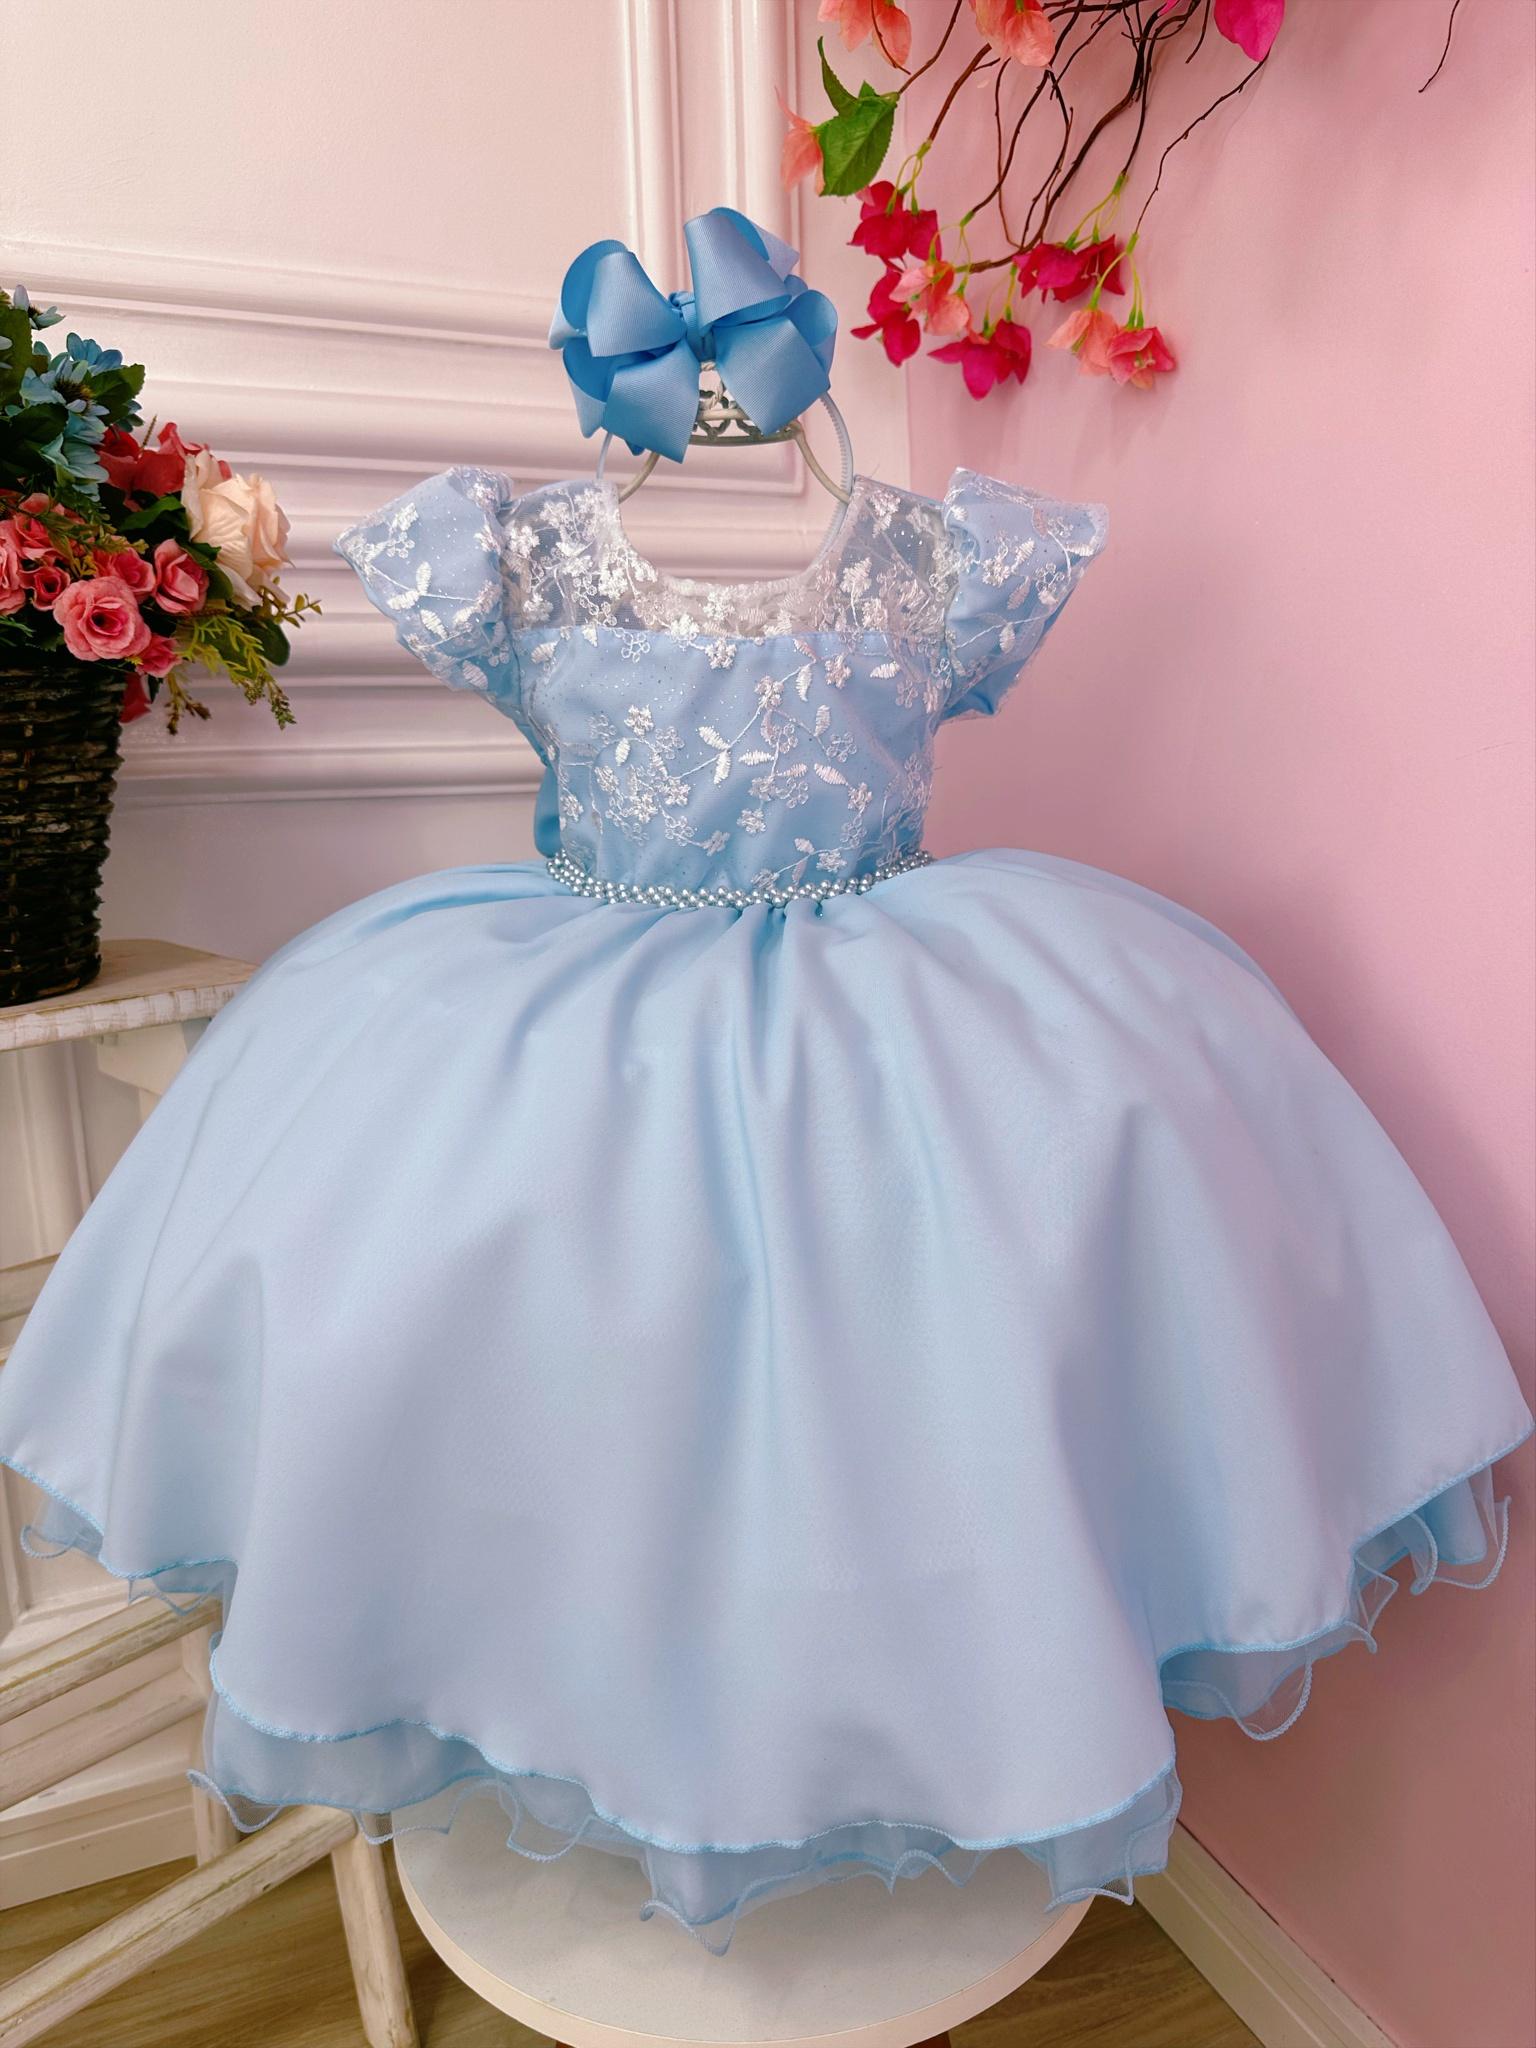 Vestido Infantil Azul Bebê e Renda C/ Glitter Cinto Pérolas